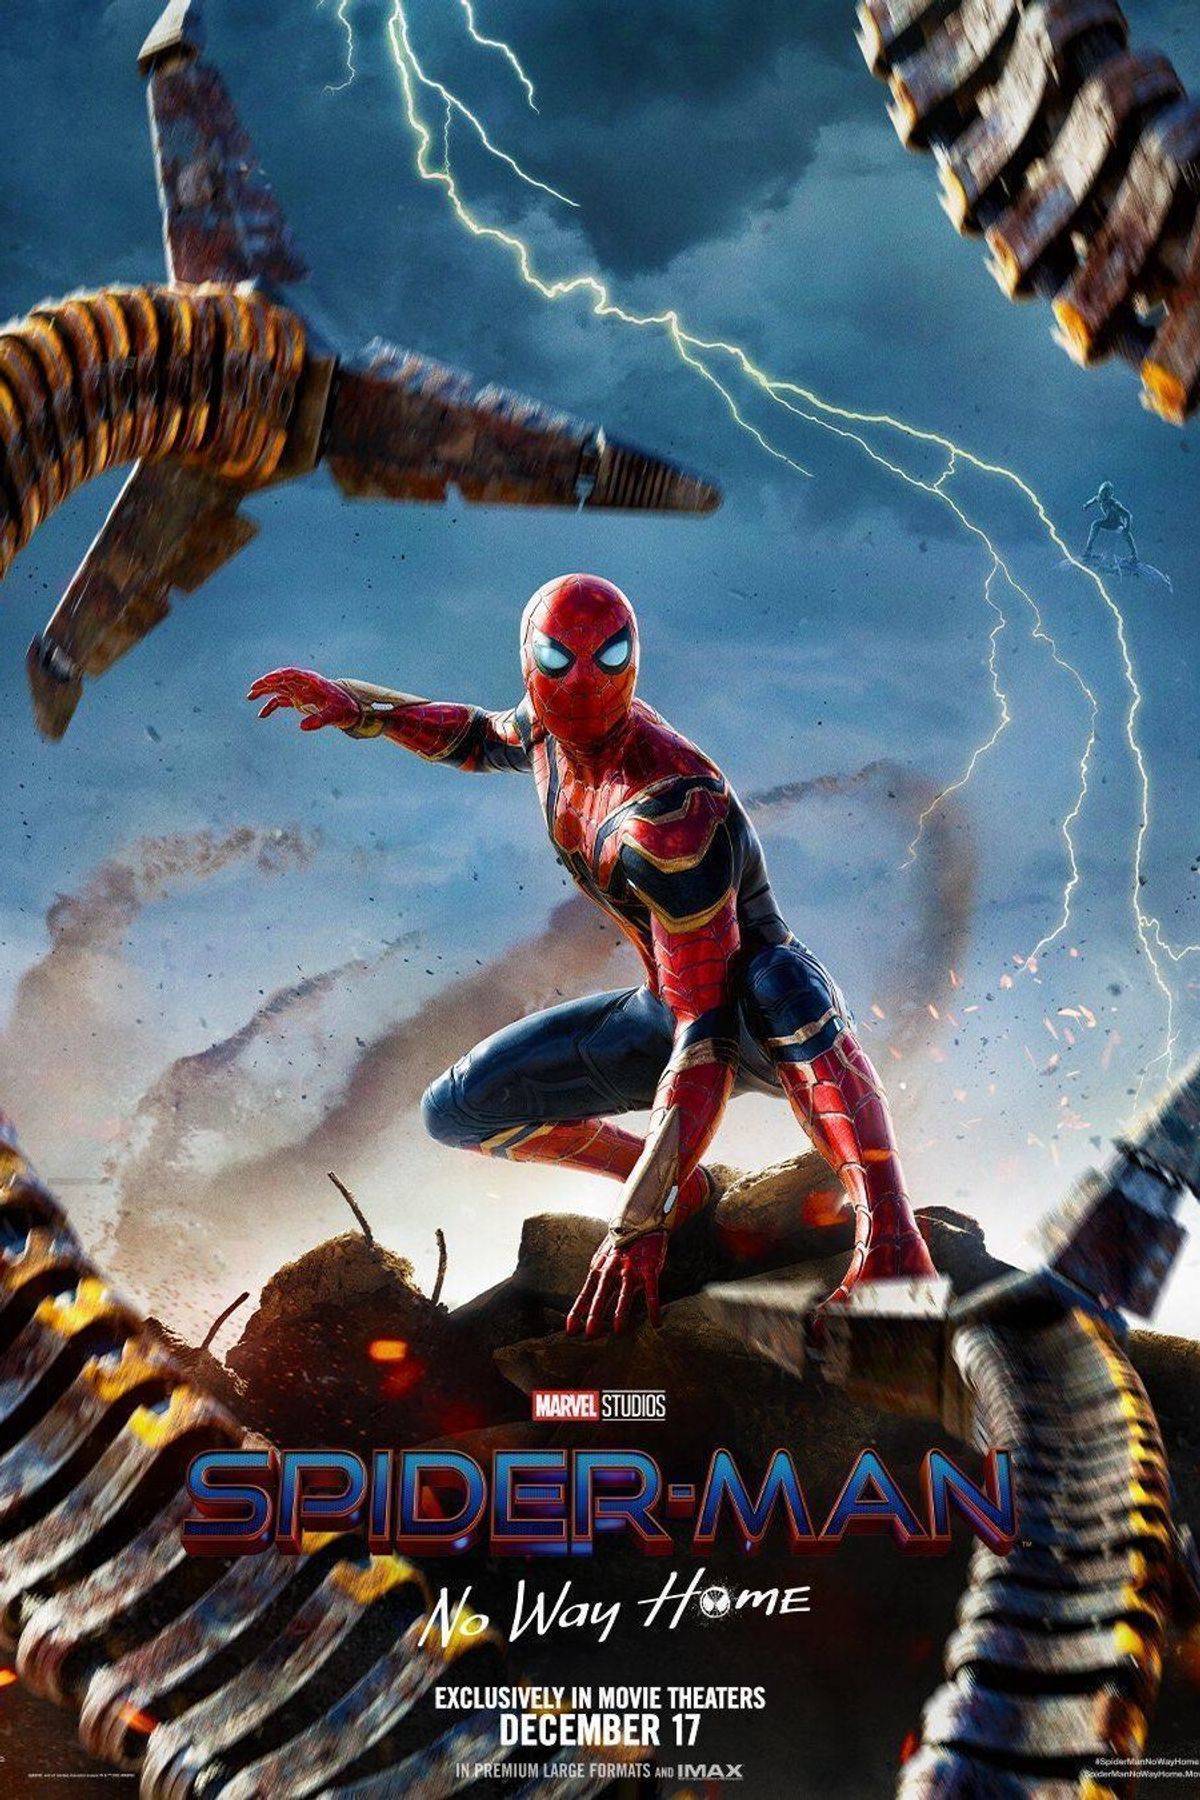 Spider-Man: No Way Home (2021) Movie Information & Trailers